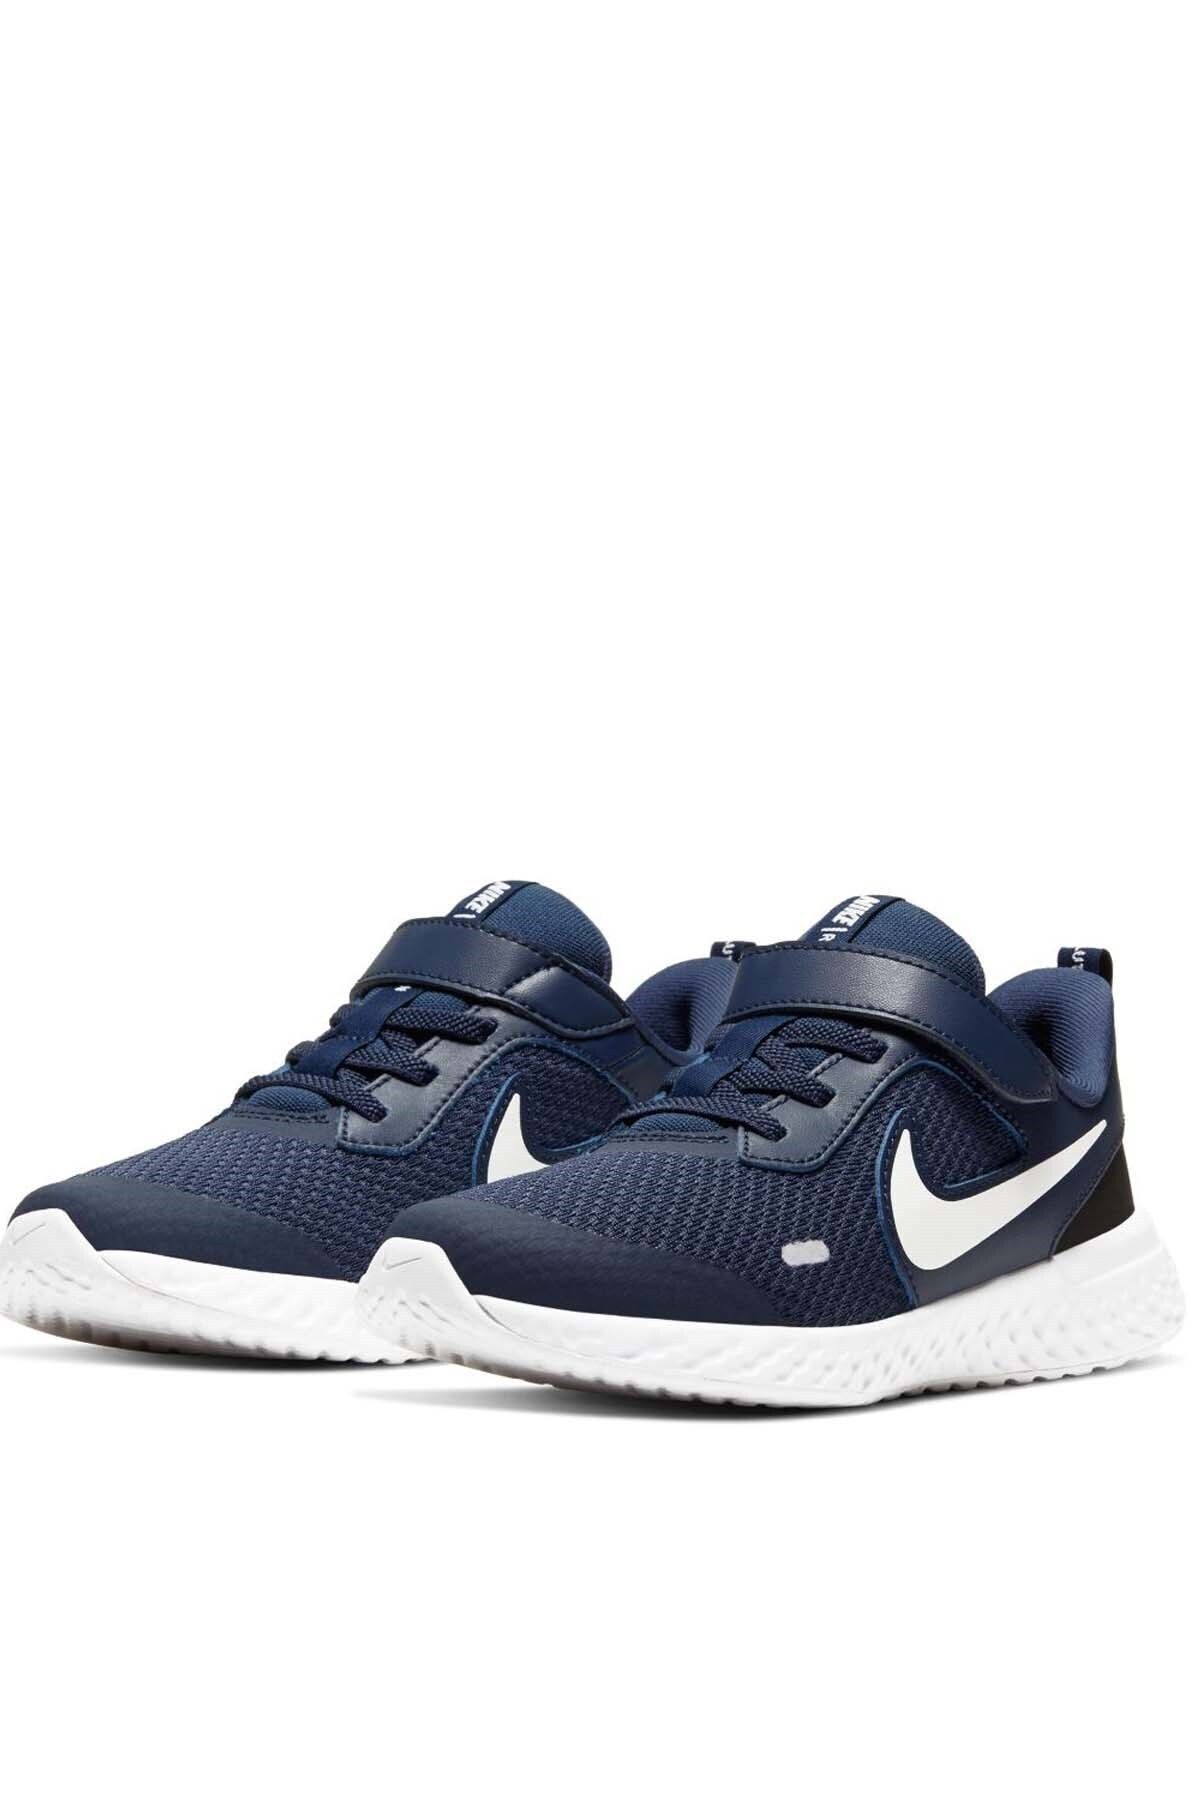 Nike Revolutıon 5 (PSV) Çocuk Yürüyüş Koşu Ayakkabı Bq5672-402-lacıvert